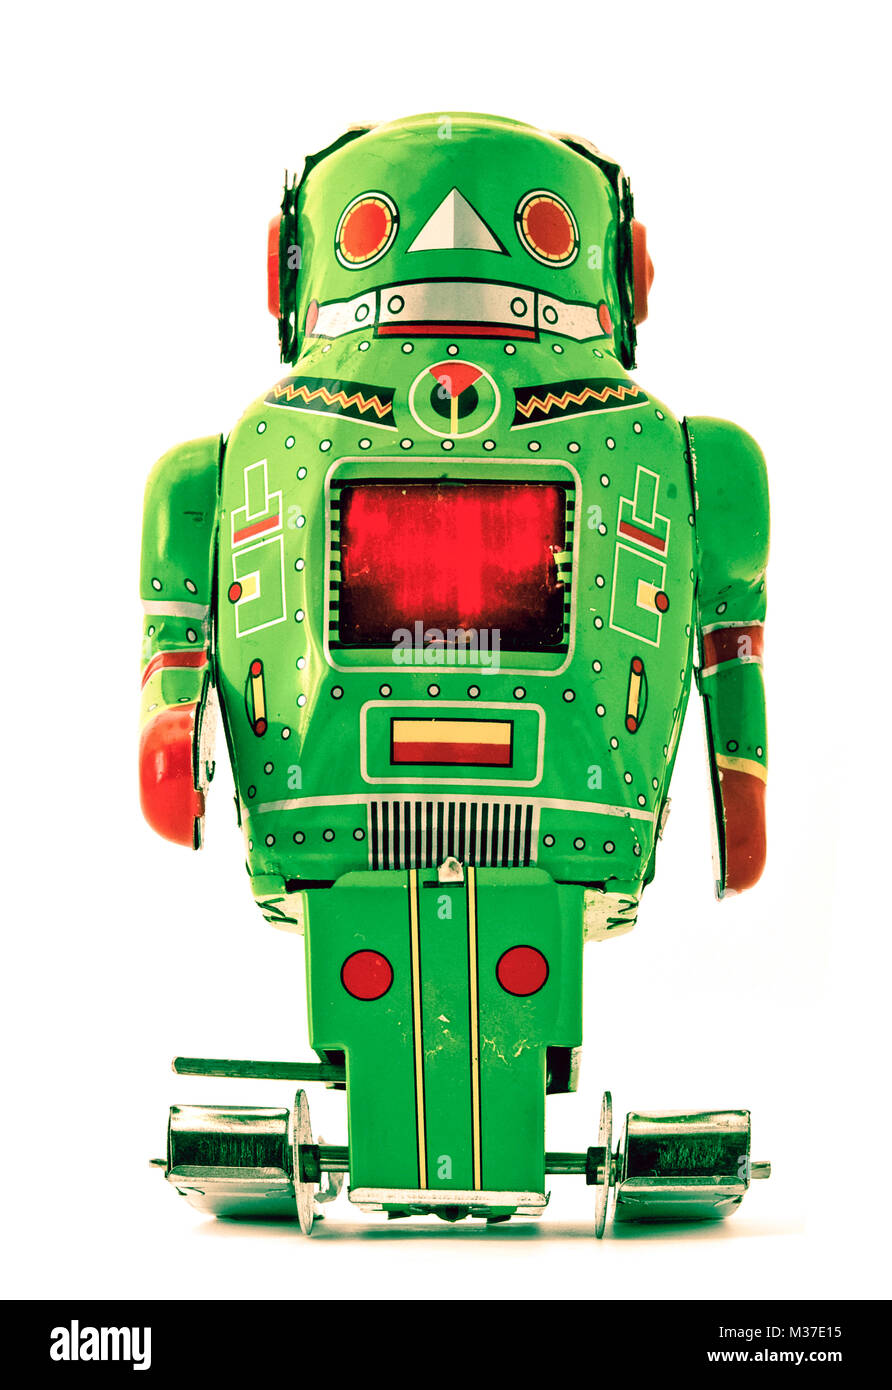 retro green robot toy Stock Photo